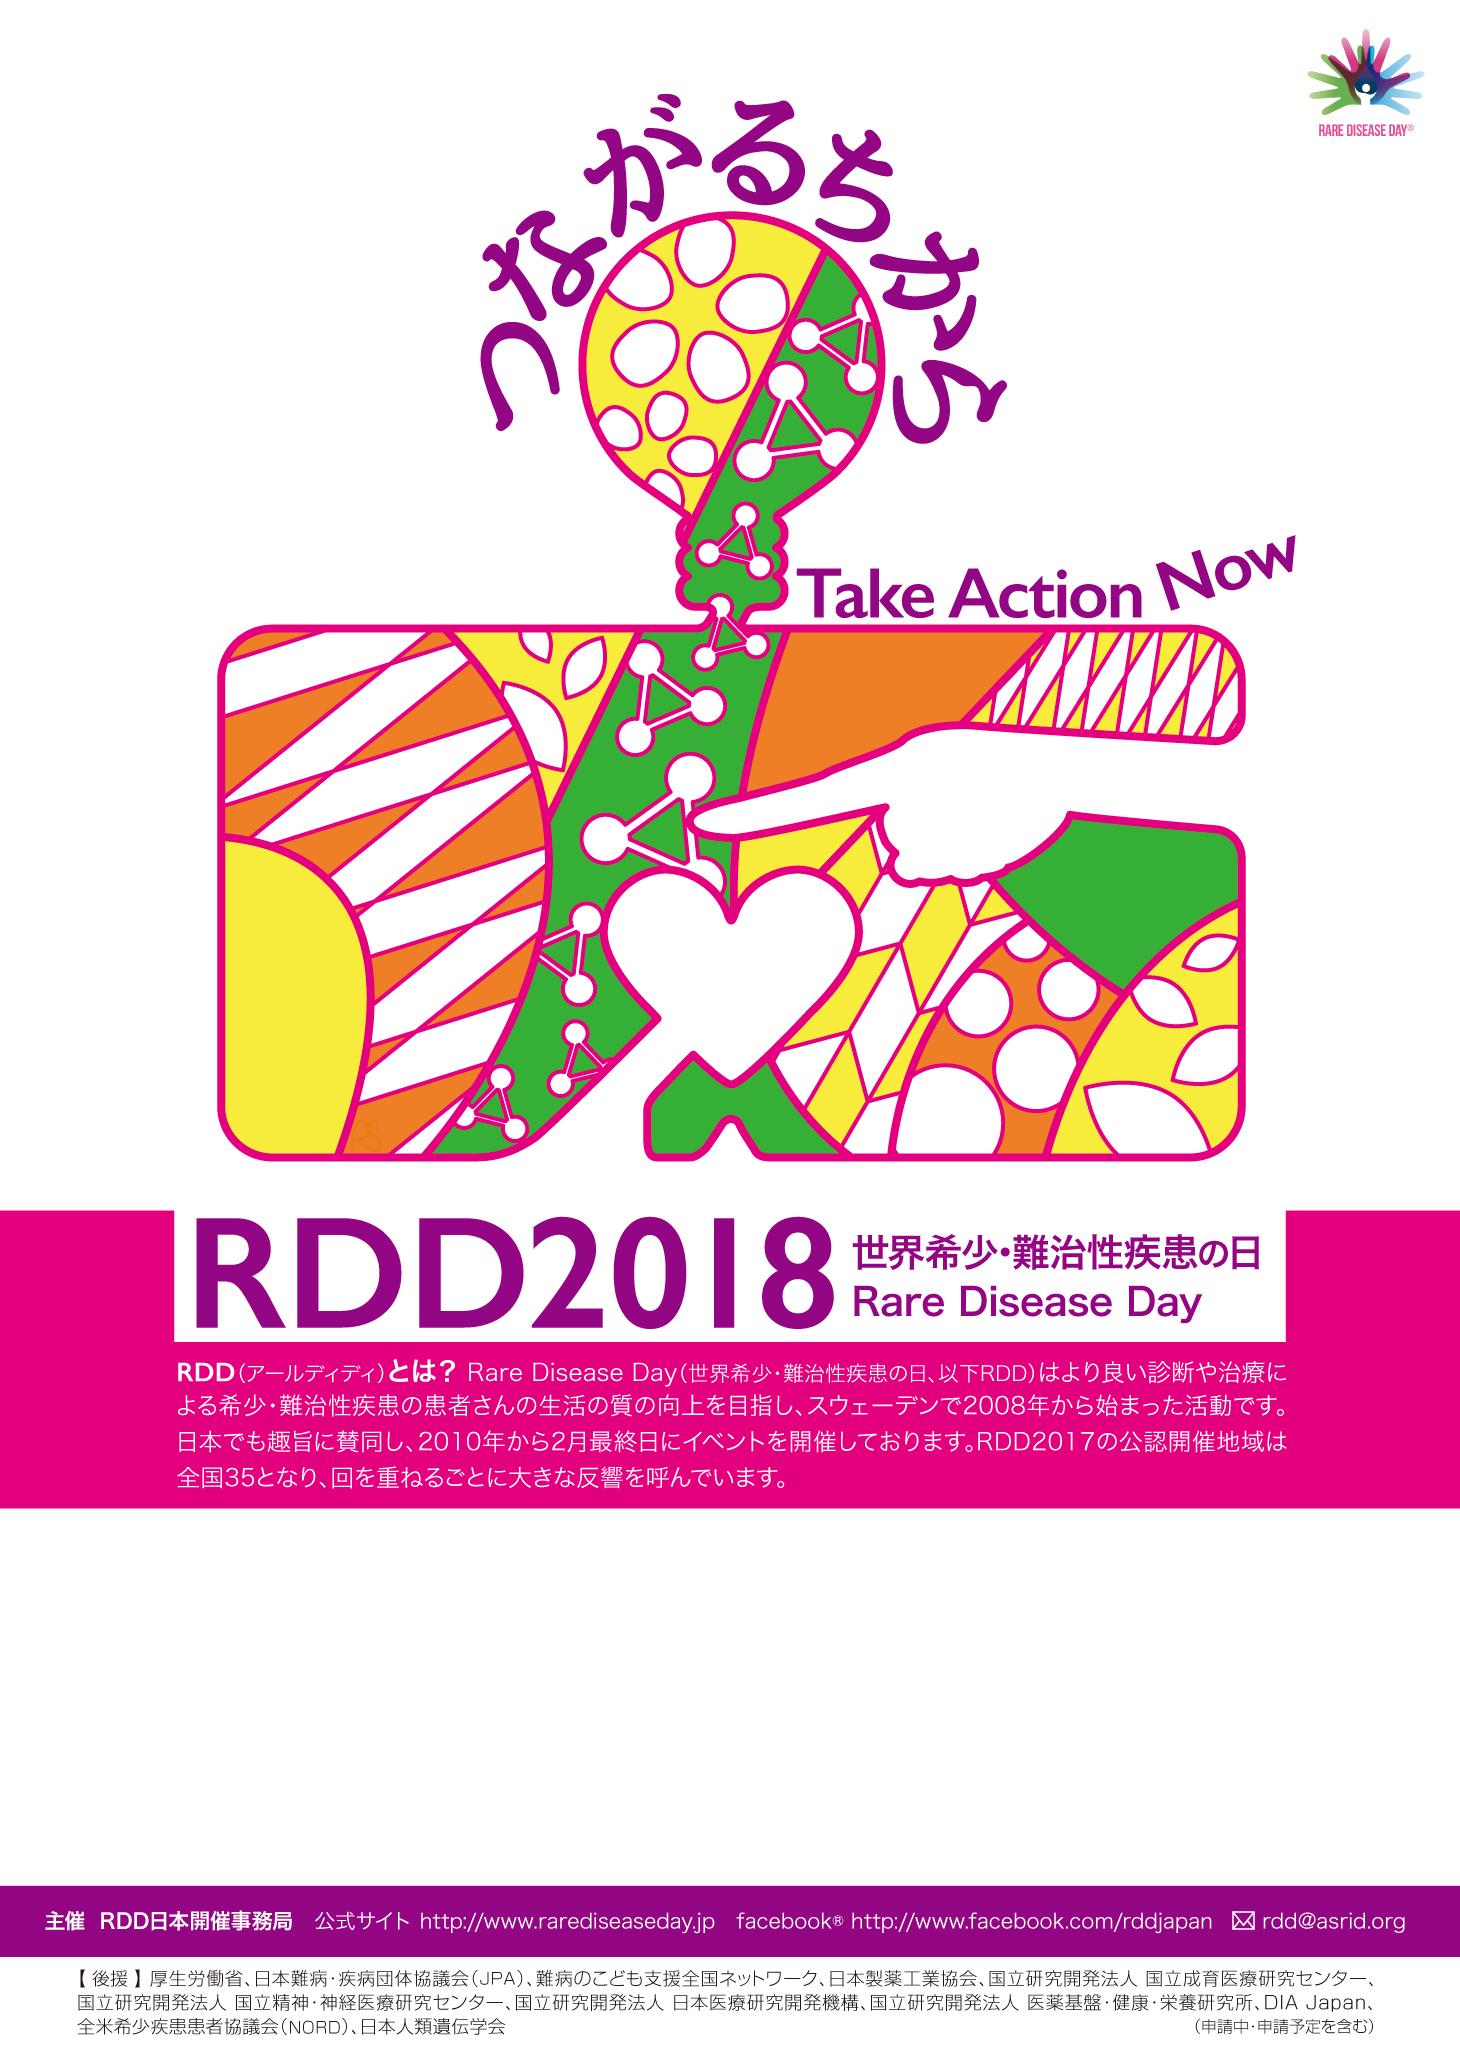 RDD神戸を開催しました